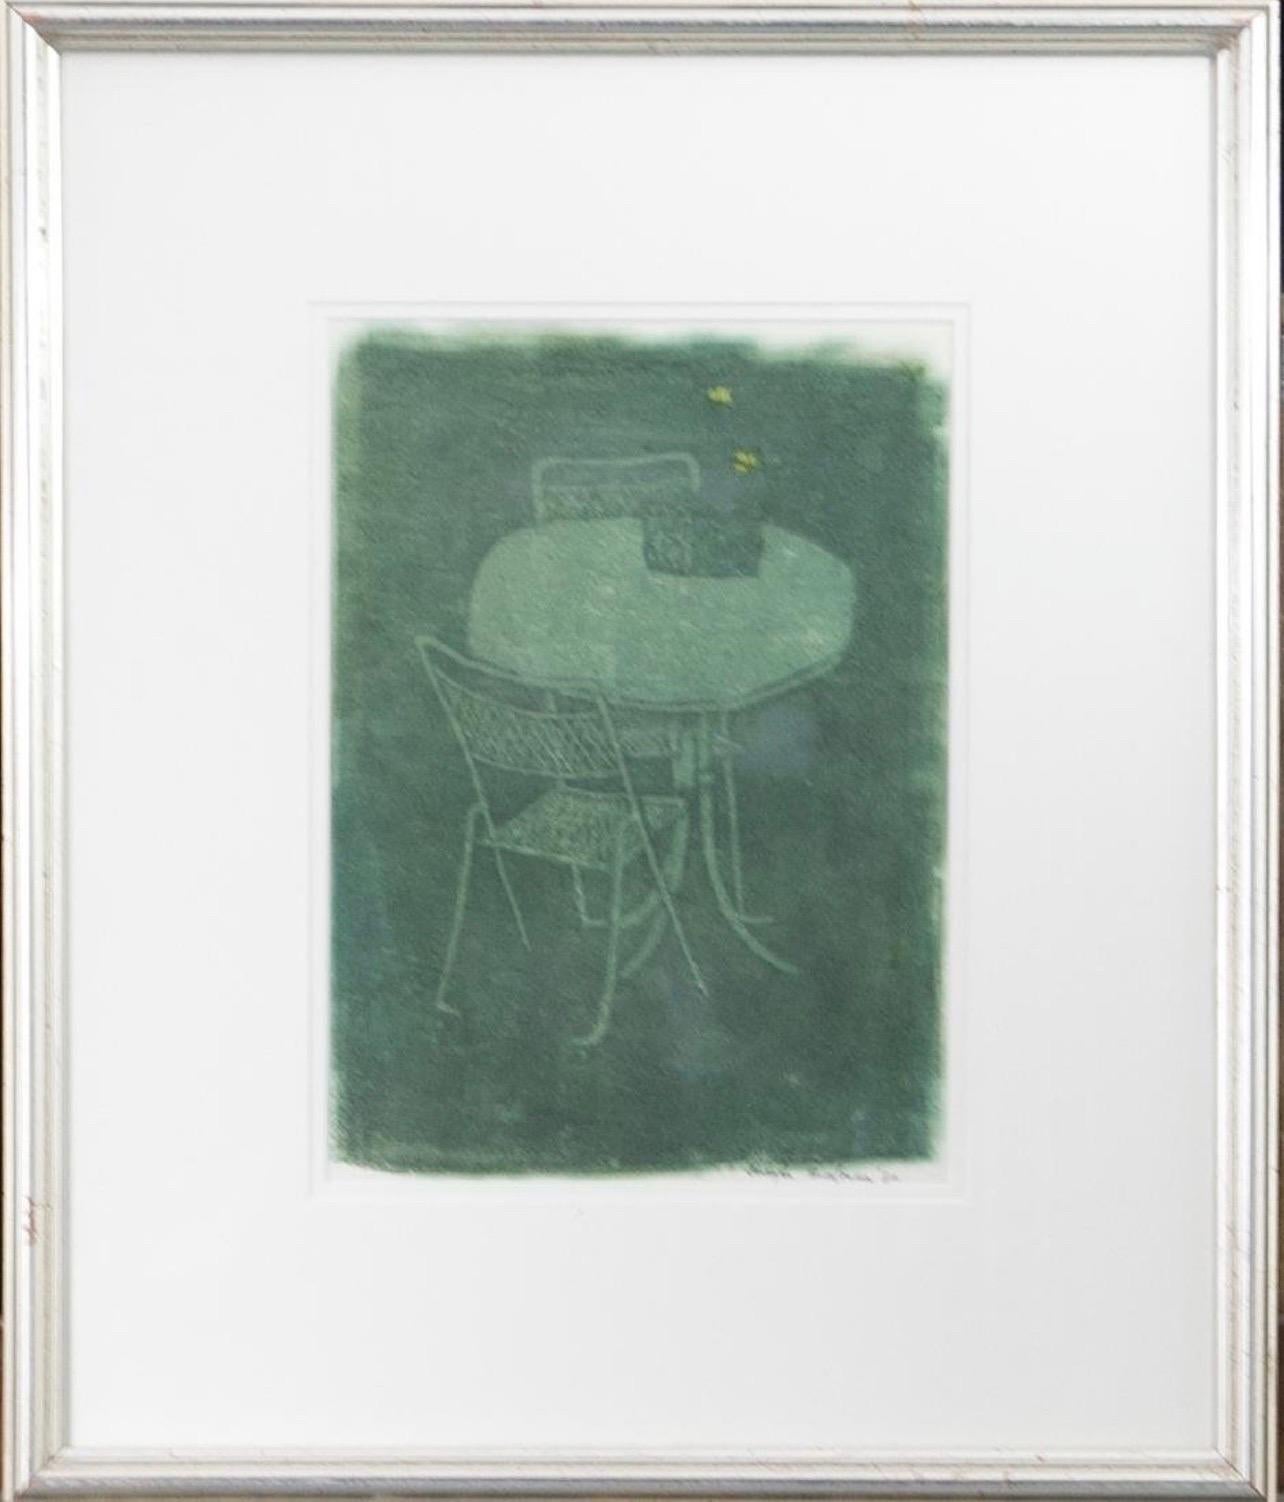 
Peinture monotype Titre : Table et chaises, 1980
Moyen :  peinture monotype ou monoprint
Taille : image 13 x 9,5, ensemble avec le cadre 23 x 20 
Signé à la main et daté en bas à droite
Provenance : Mercury Gallery (a) Gallery, Boston MA

Joseph